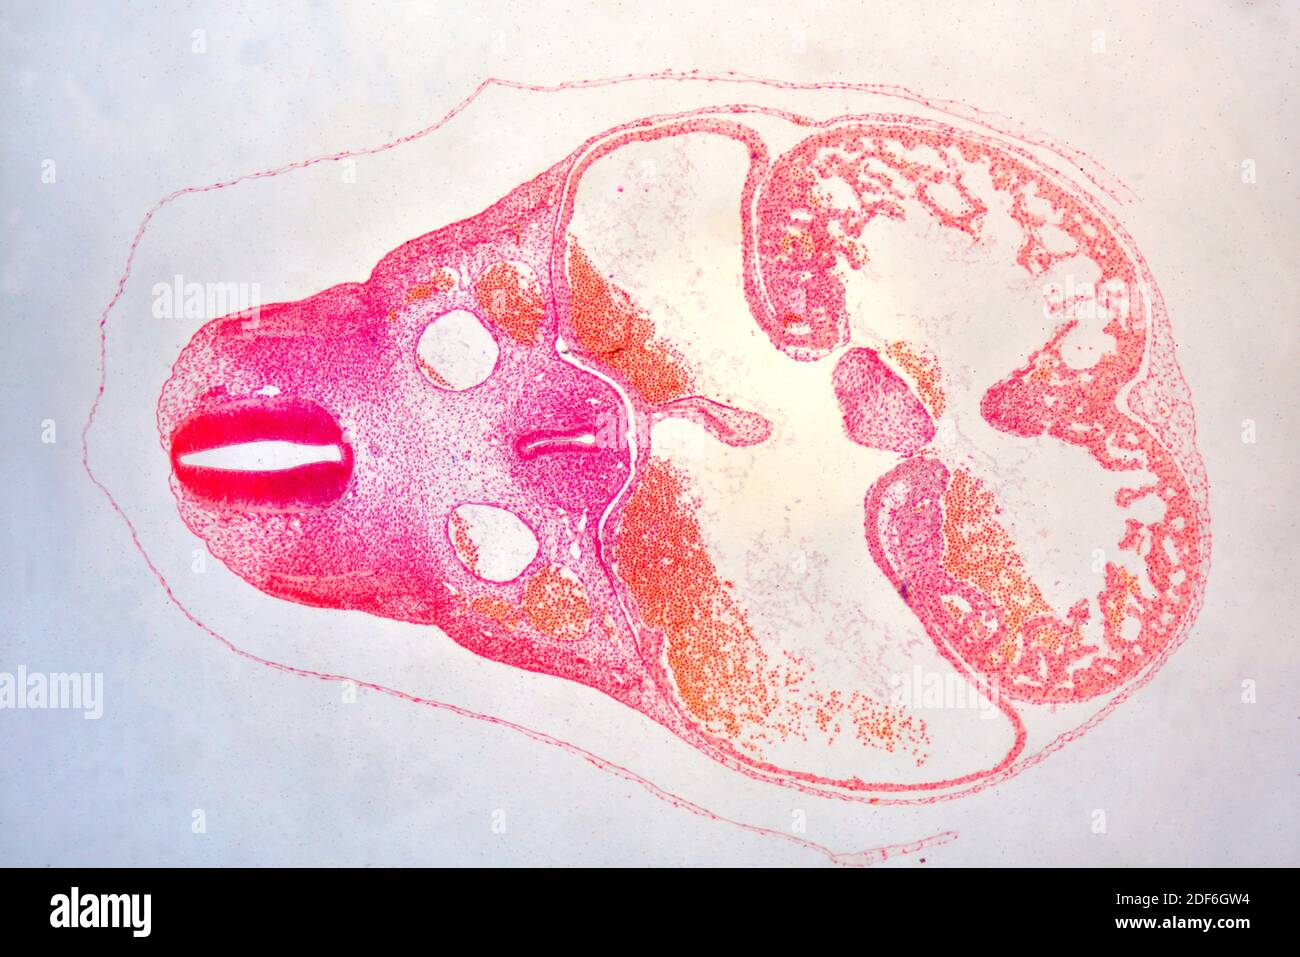 Schwein Embryo Querschnitt zeigt Wirbelsäule, Vorderdarm, Pleurahöhle, Herz und Kopf. Optisches Mikroskop X40. Stockfoto